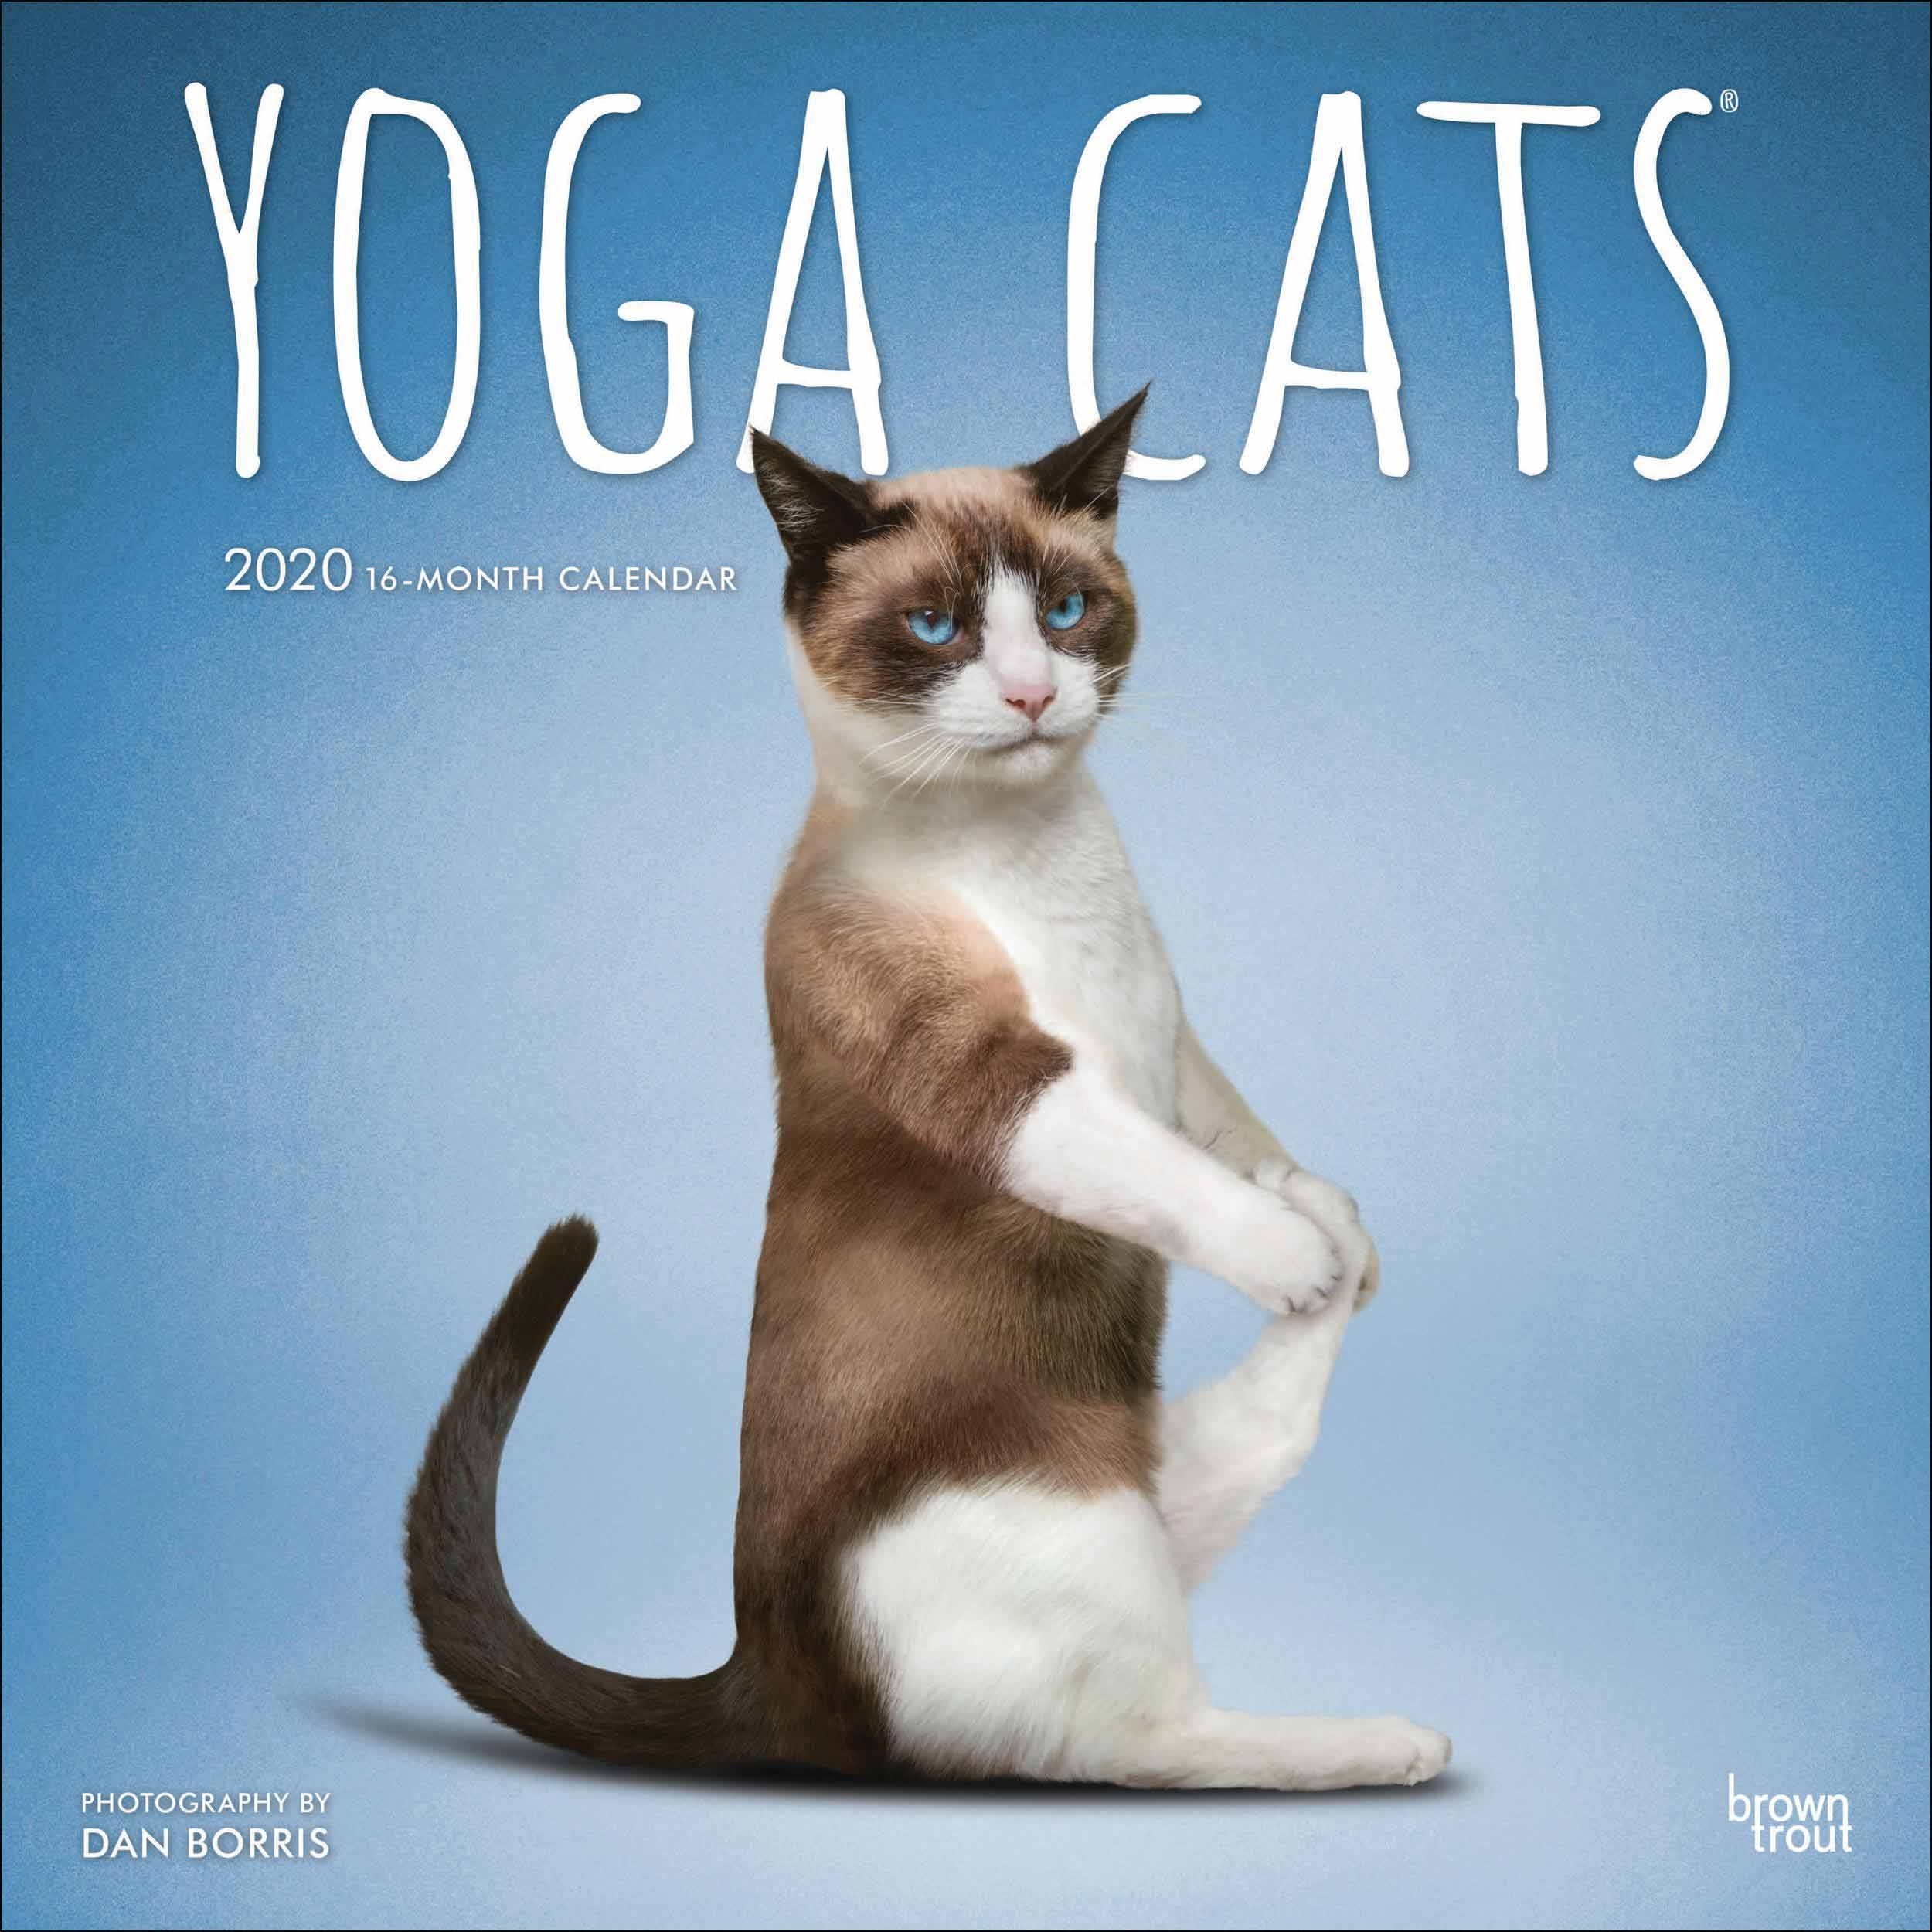 Yoga Cats Calendar 2020